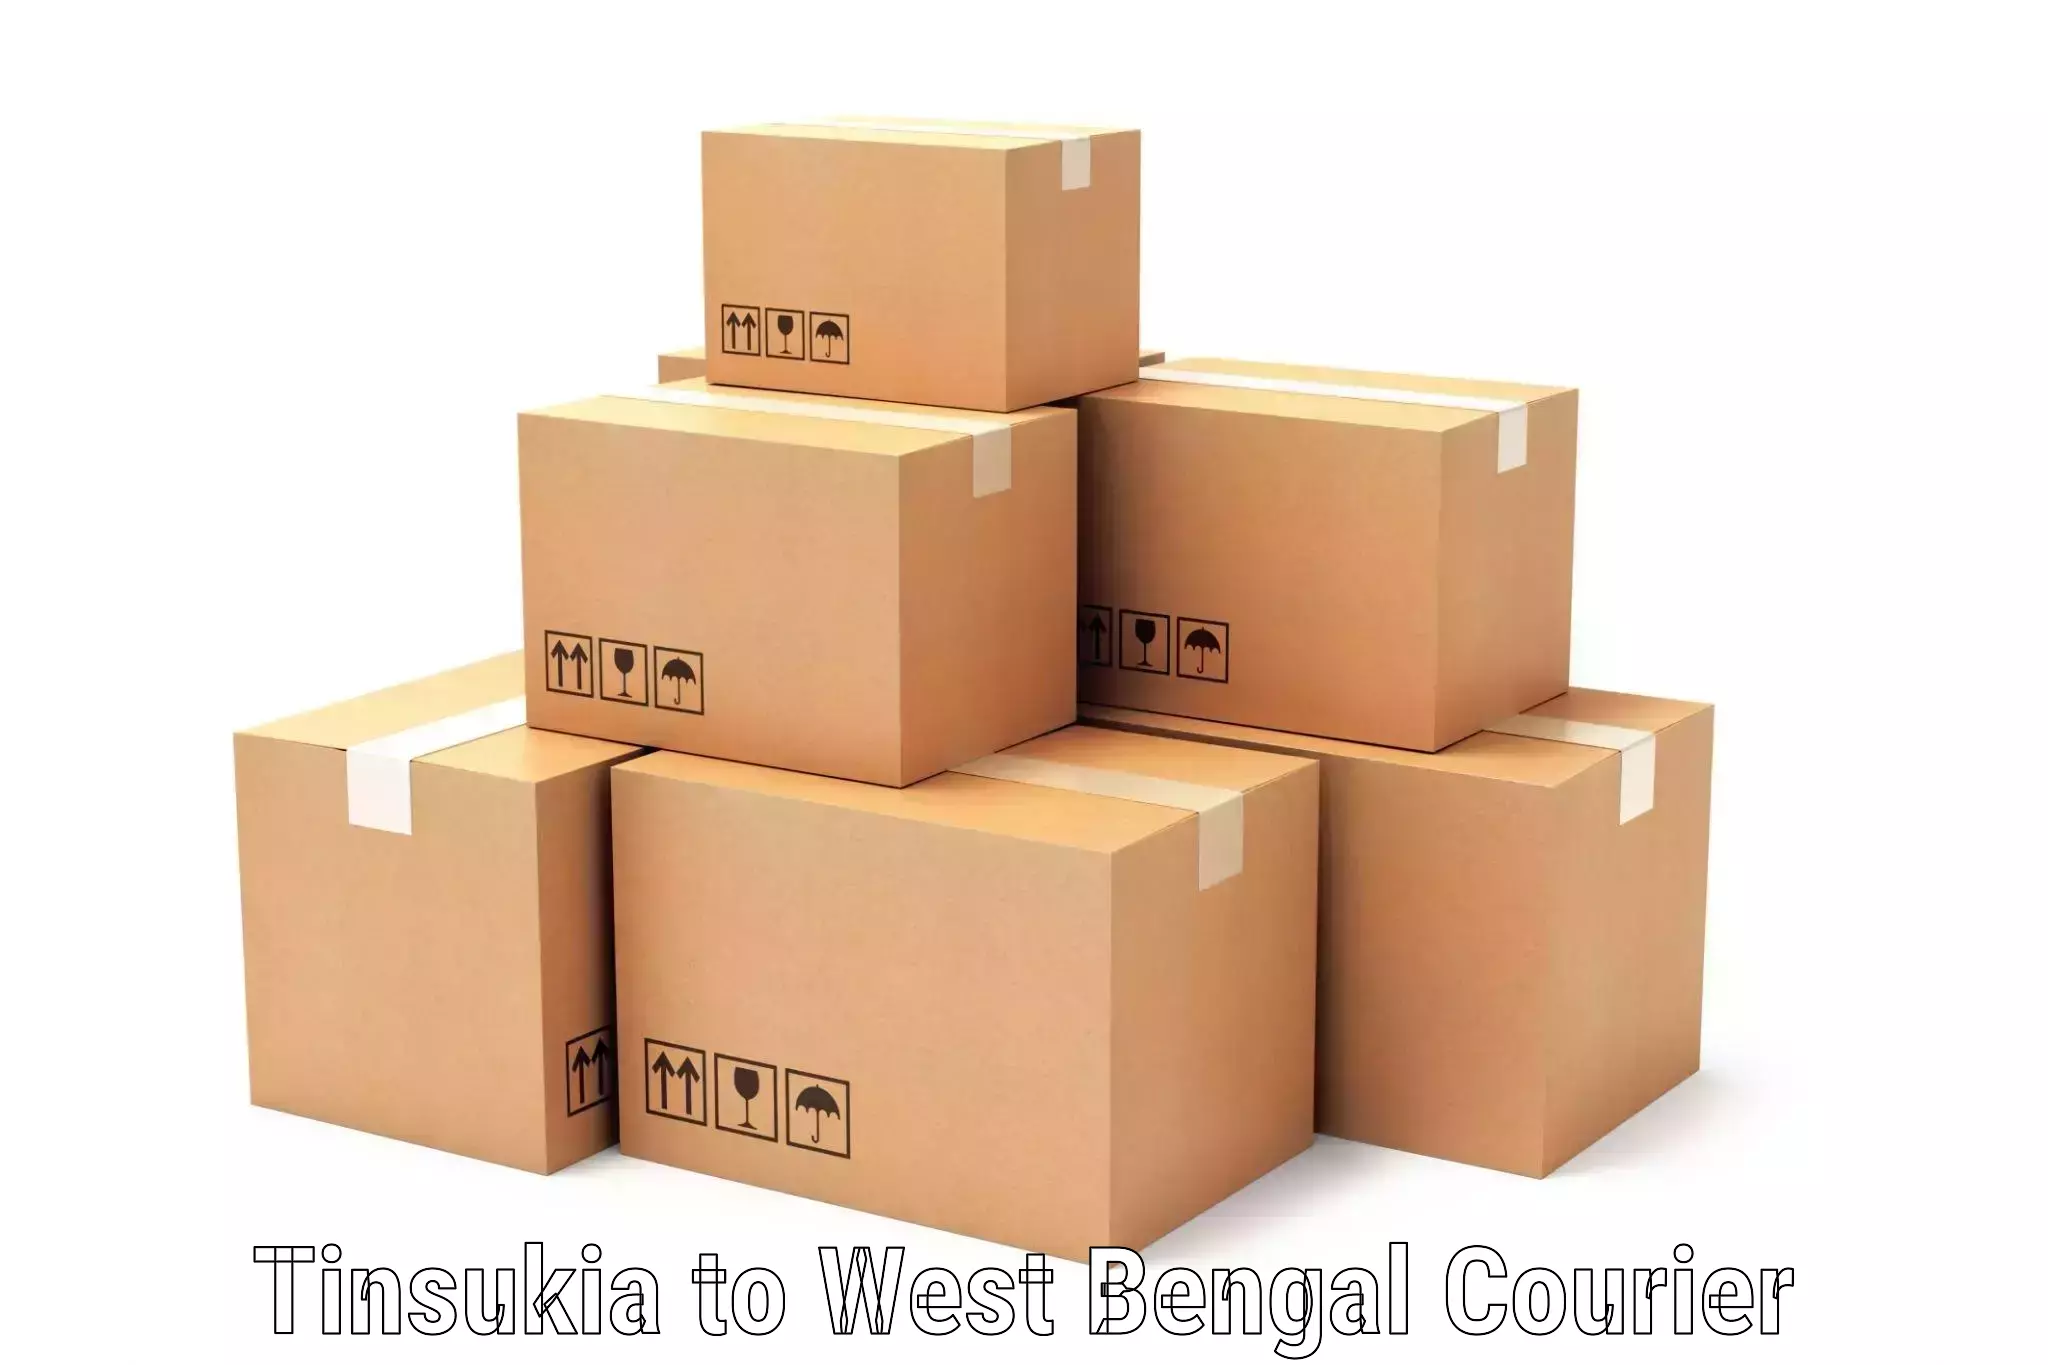 Courier service innovation Tinsukia to Panagarh